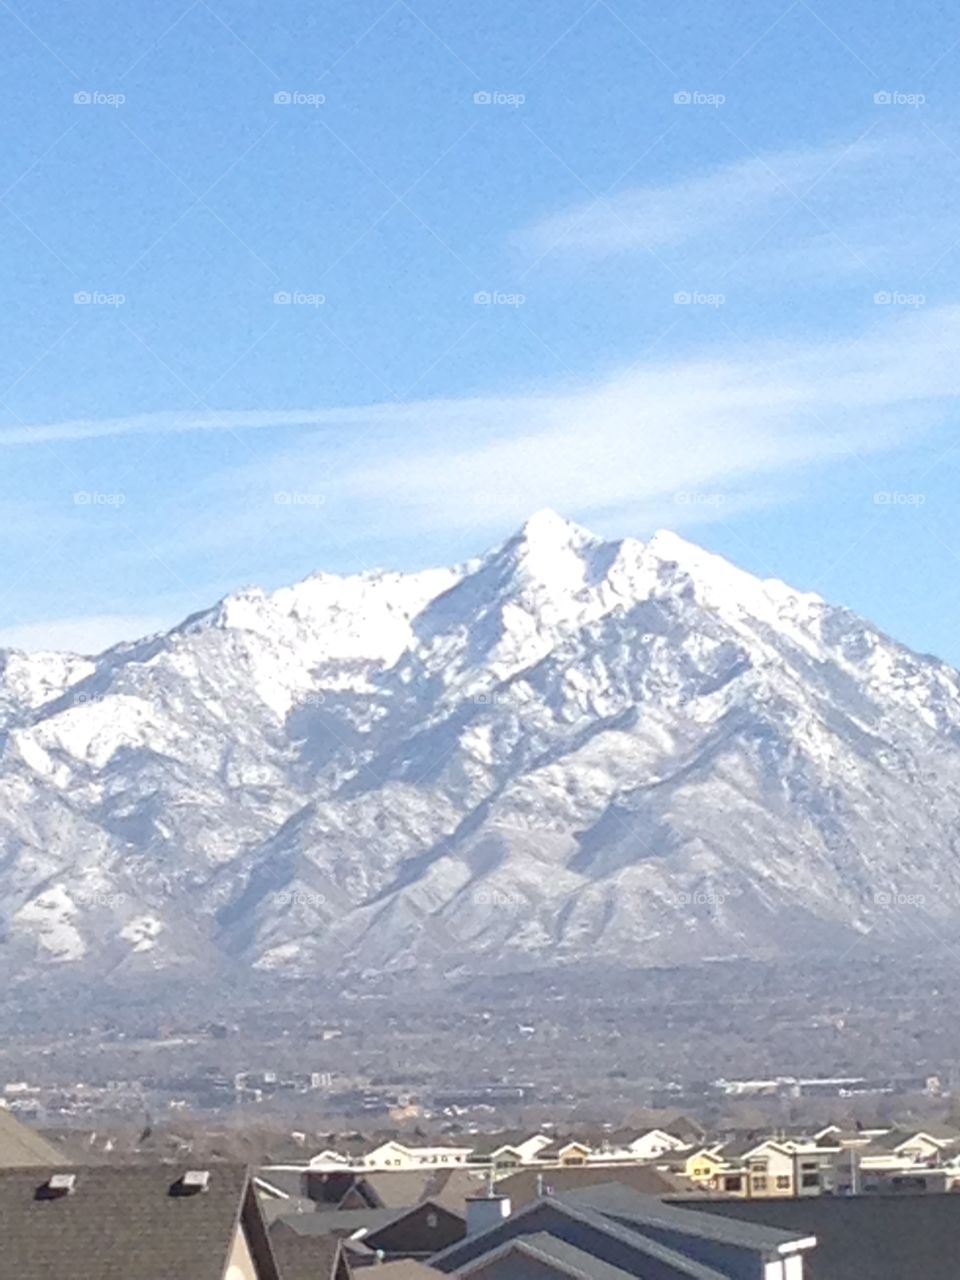 Snow cap mountain 